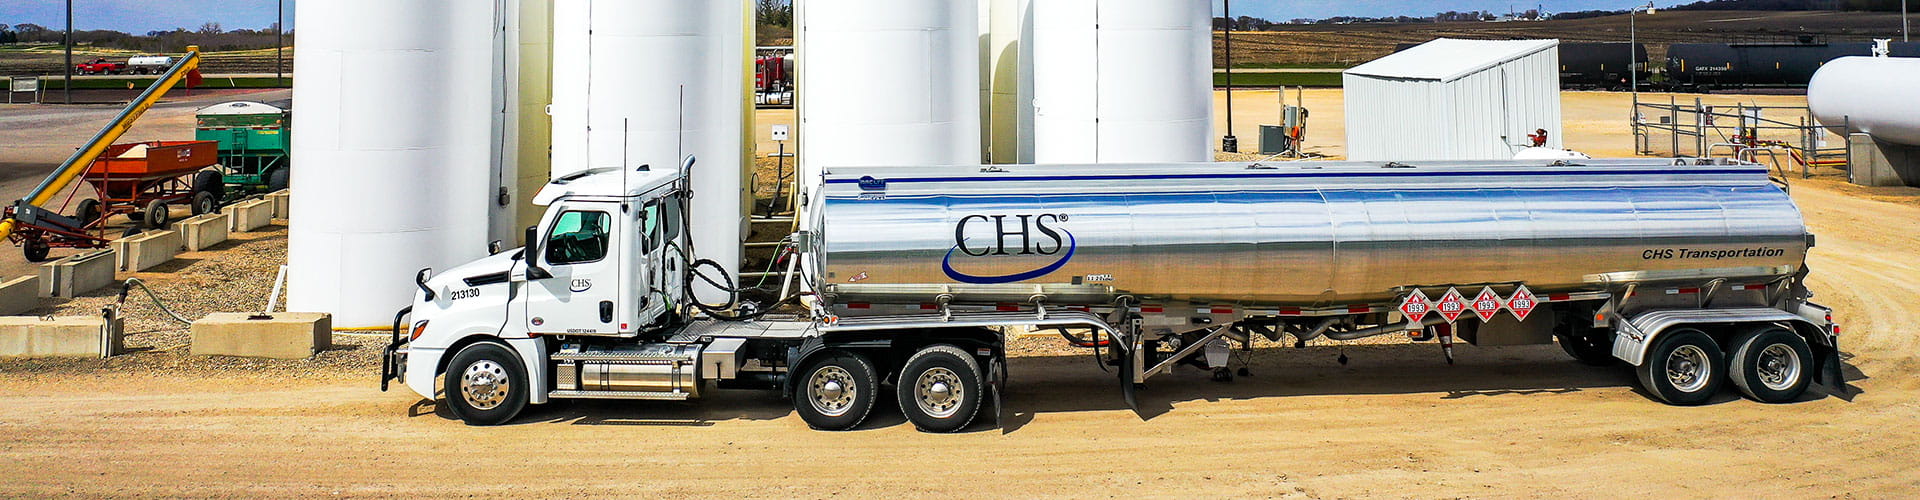 CHS Transportation tanker truck loading